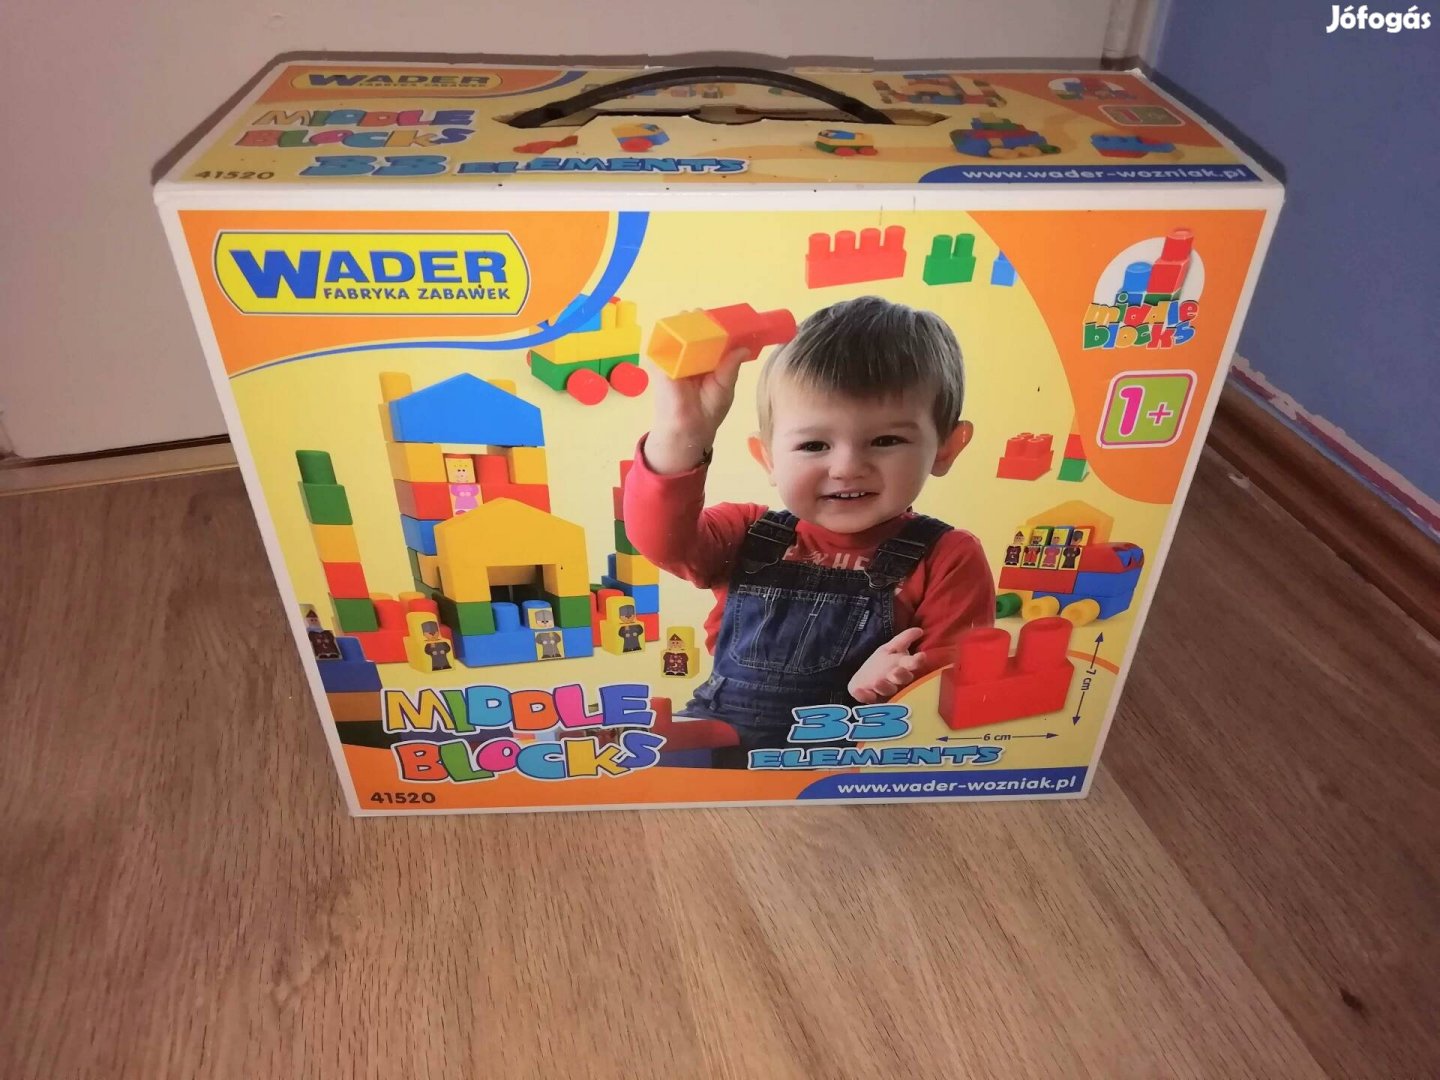 Wader Middle Blocks építőjáték 33 db-os